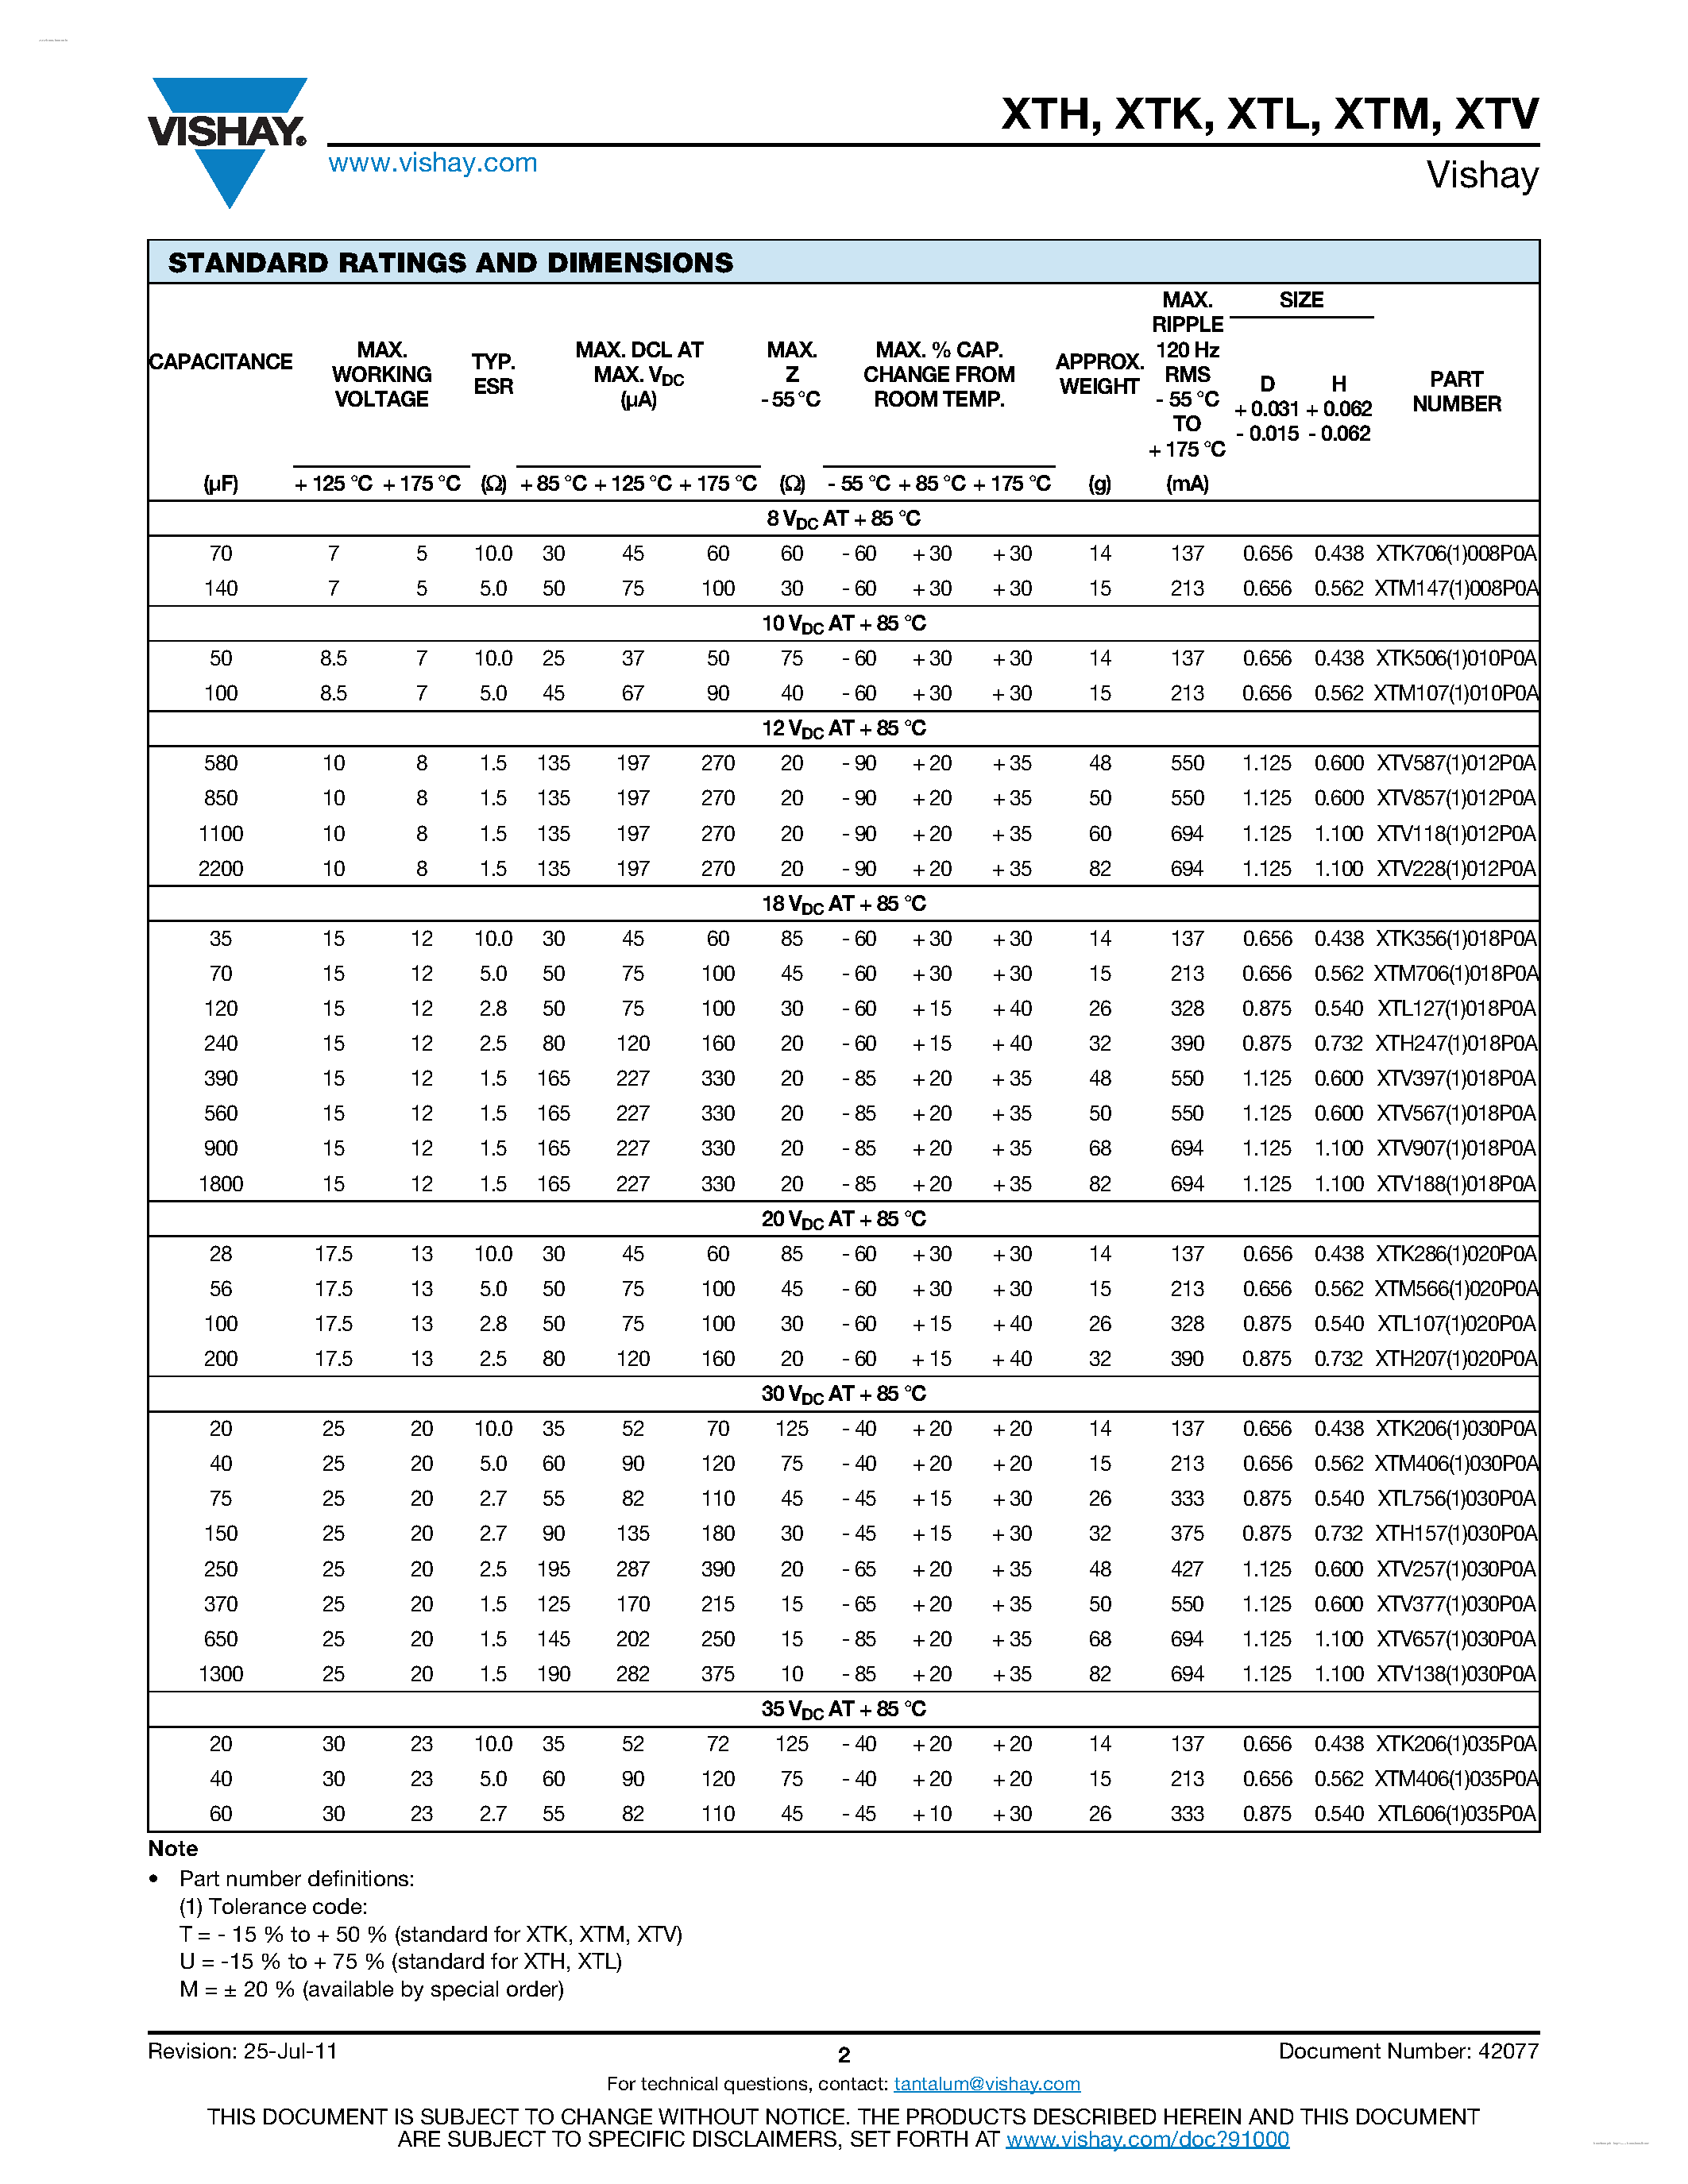 Datasheet XTM - Wet Tantalum Capacitors page 2